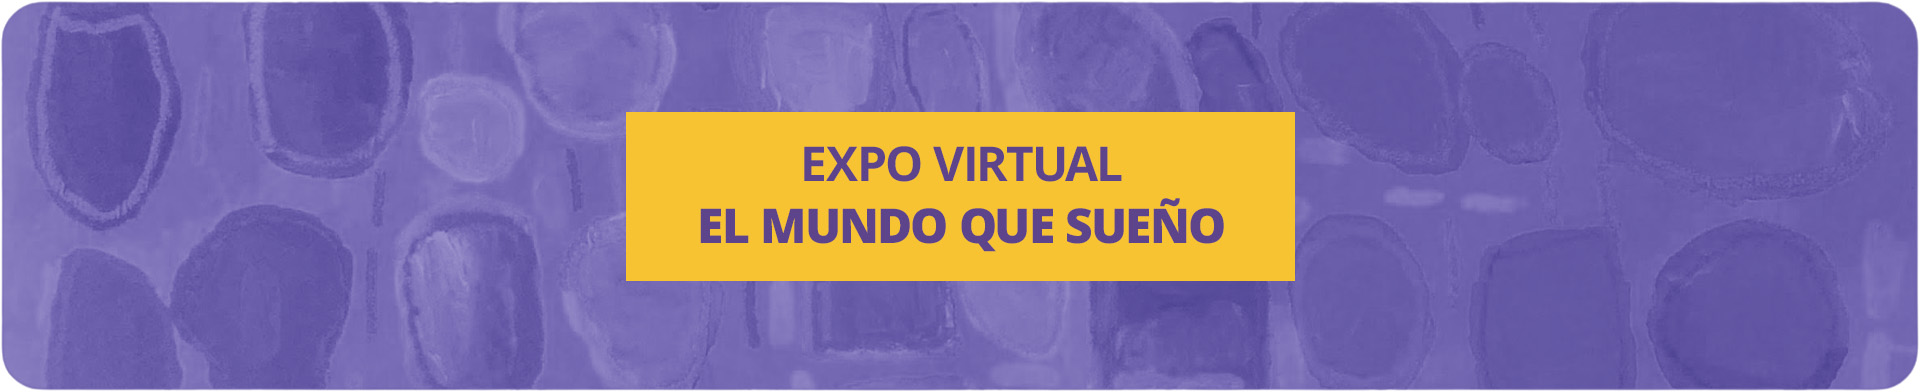 Expo Virtual: El mundo que sueño